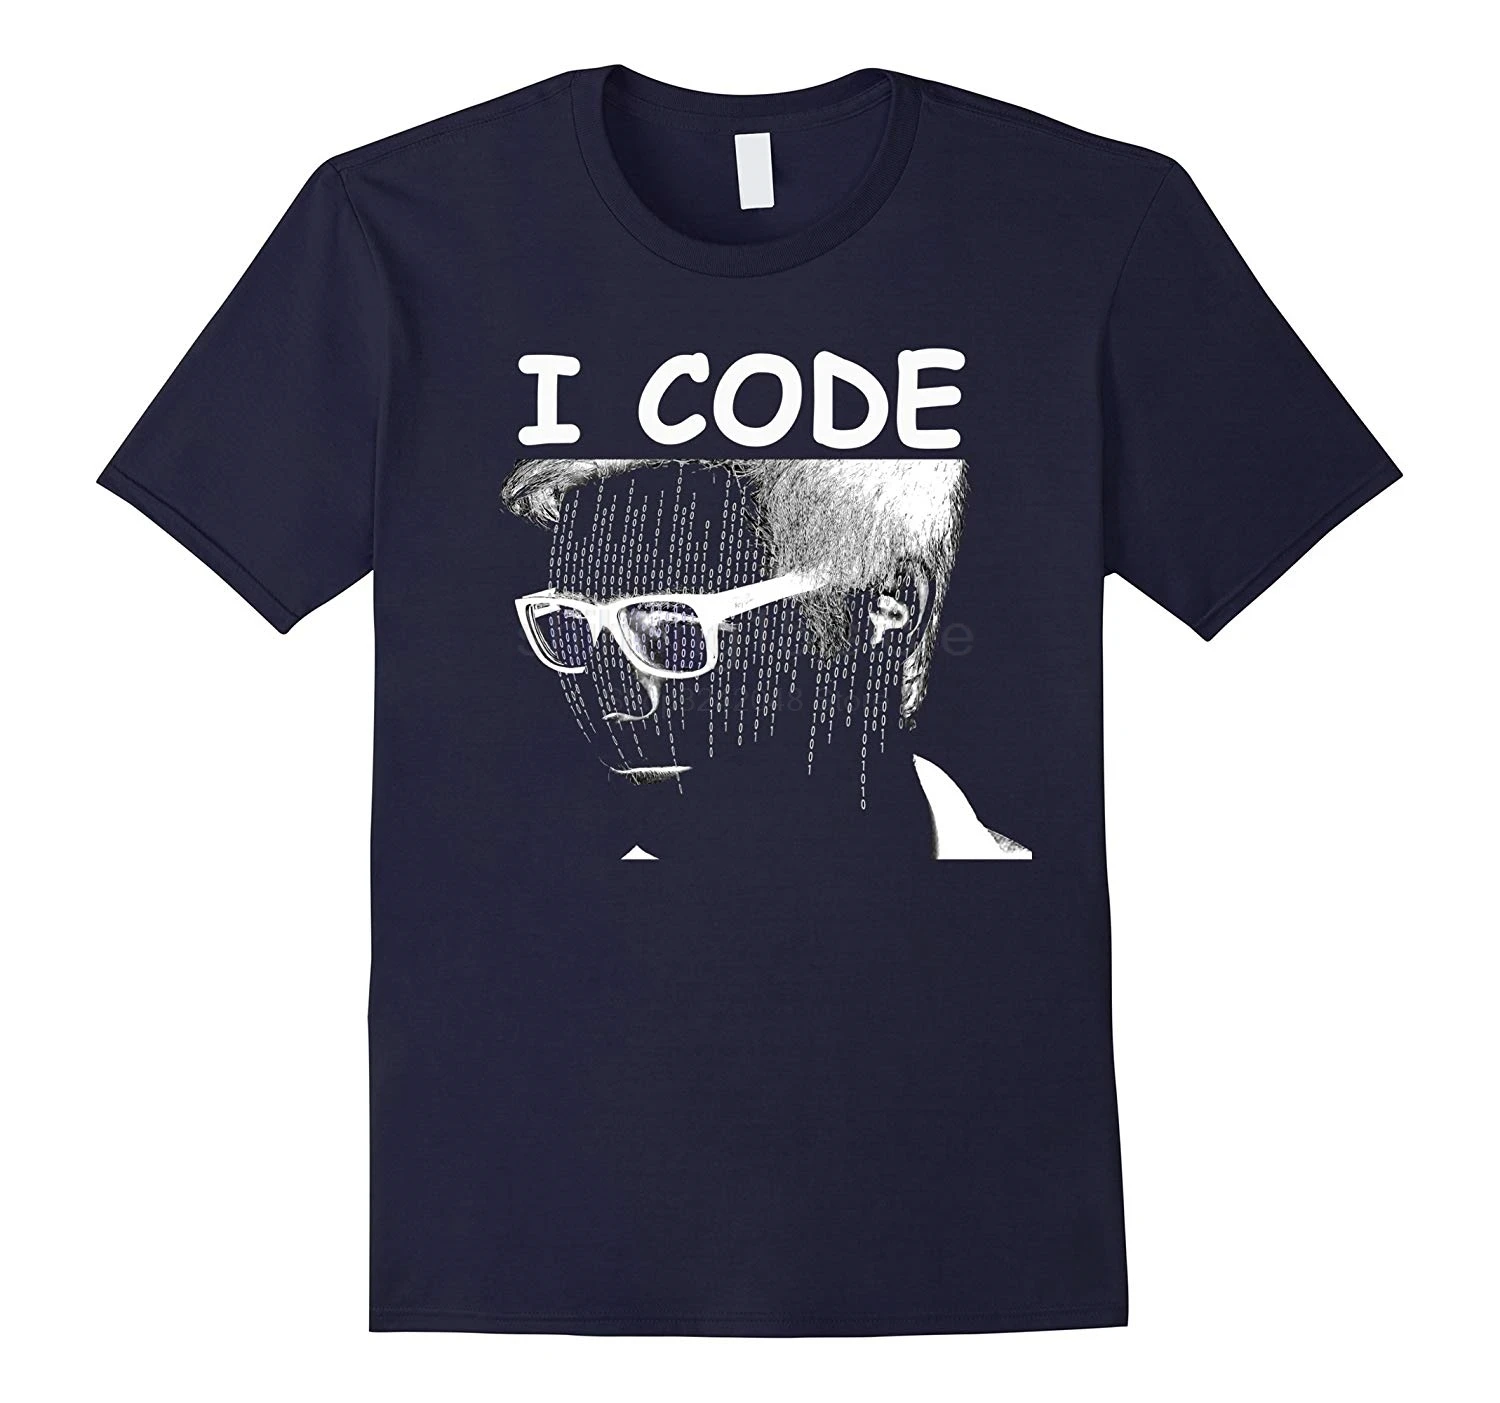 Возьмите кодеры футболки с кодом я код Забавный кодирования футболка Летняя мода для мужчин с коротким рукавом